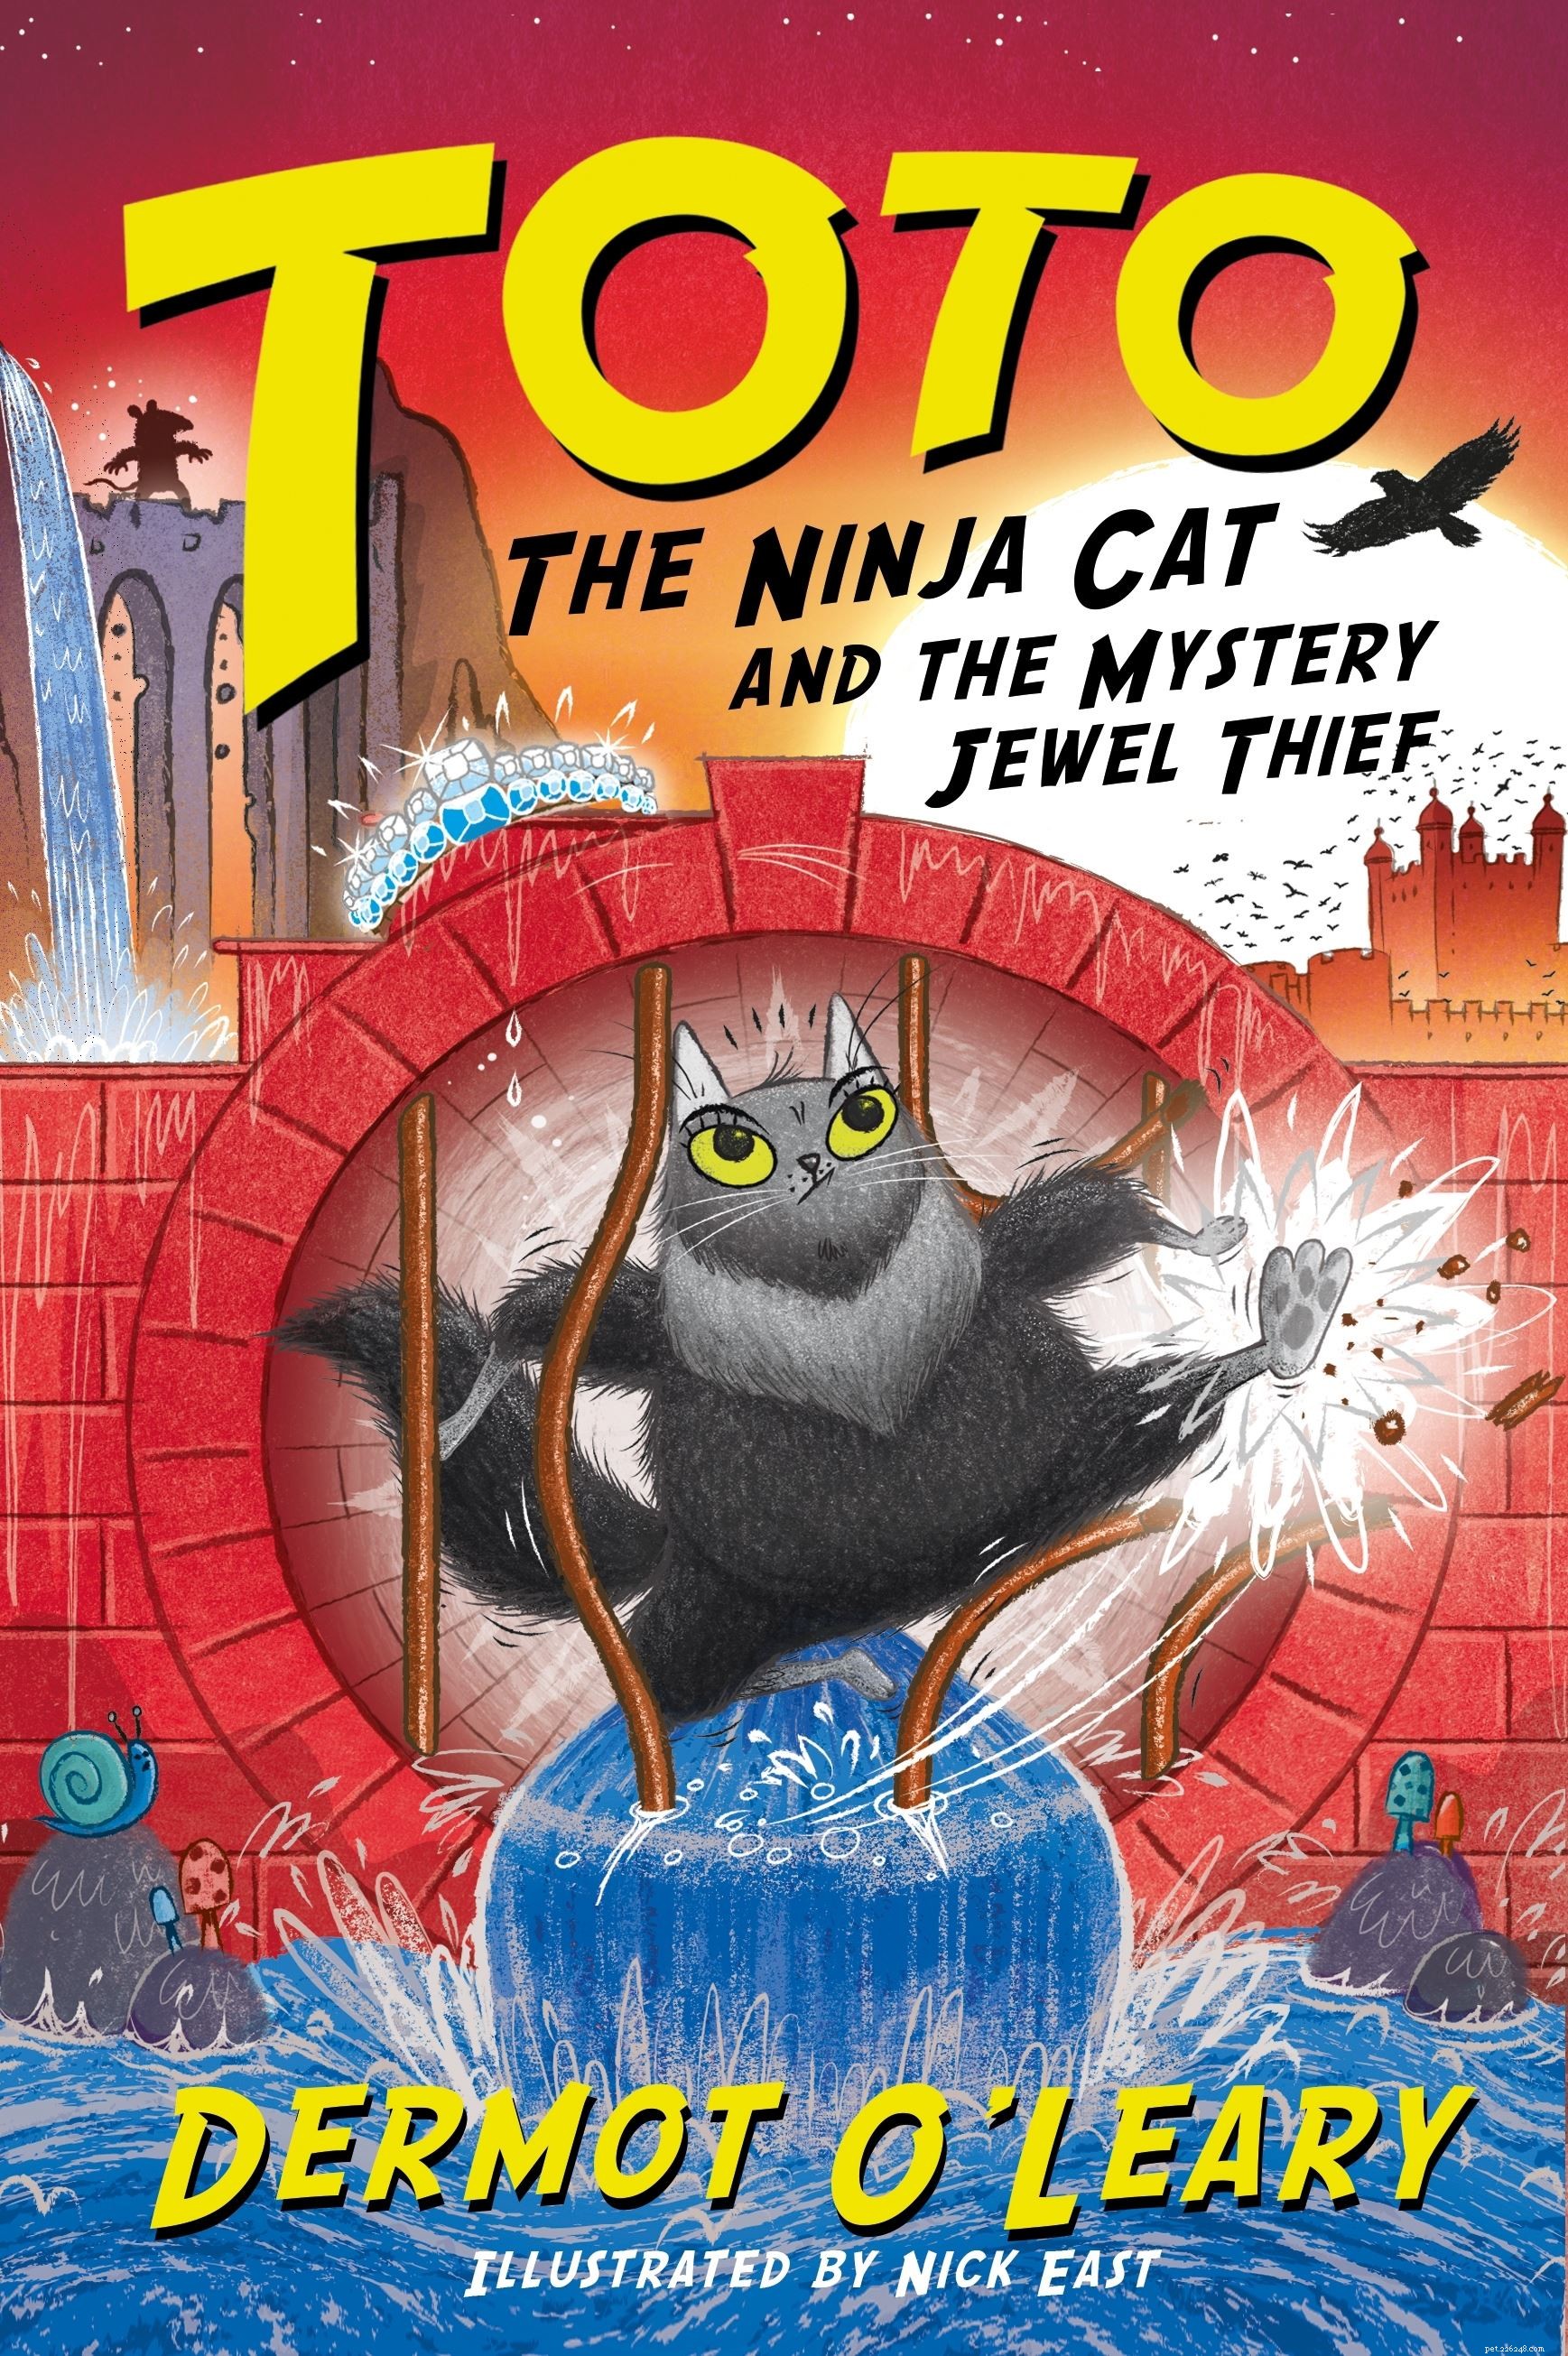 ダーモット・オレアリーは、新しいトト・ニンジャ・キャットの本の発売を記念して、キャット・プロテクションと若い猫ファンからの質問に答えます。 